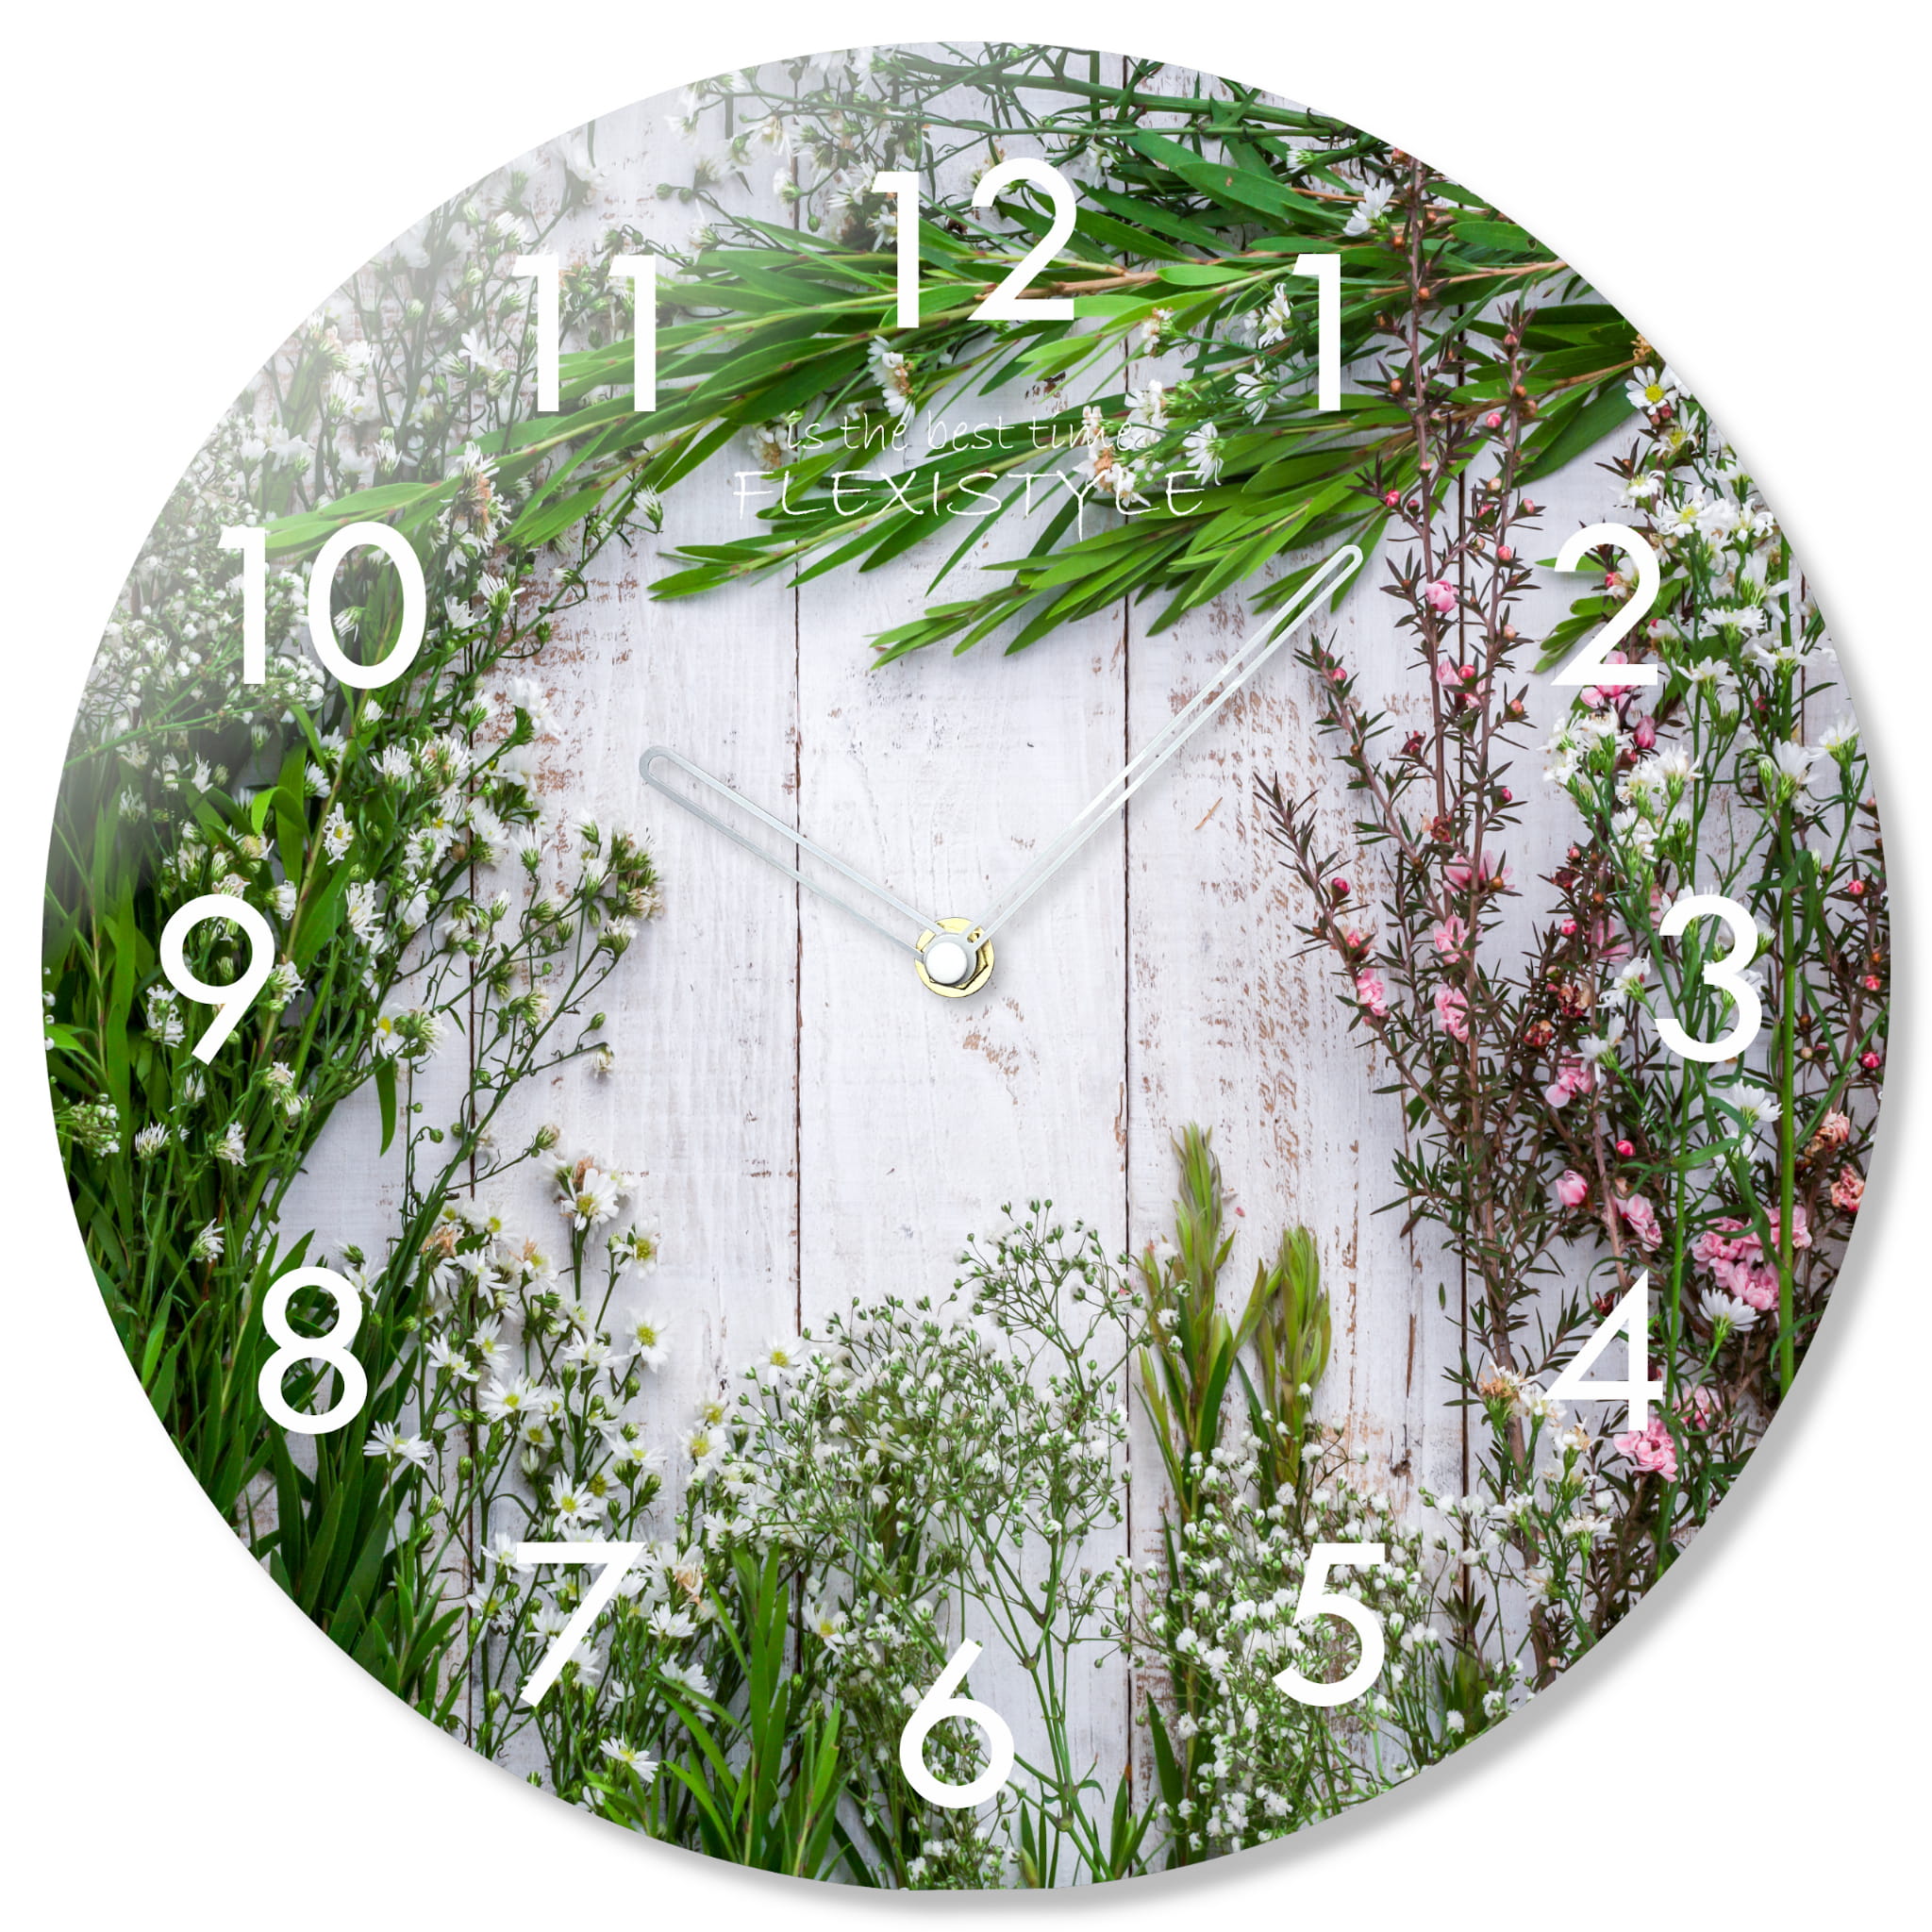 E-shop Nástenné sklenené hodiny Herbs Flex z67f s-2-x, 30 cm